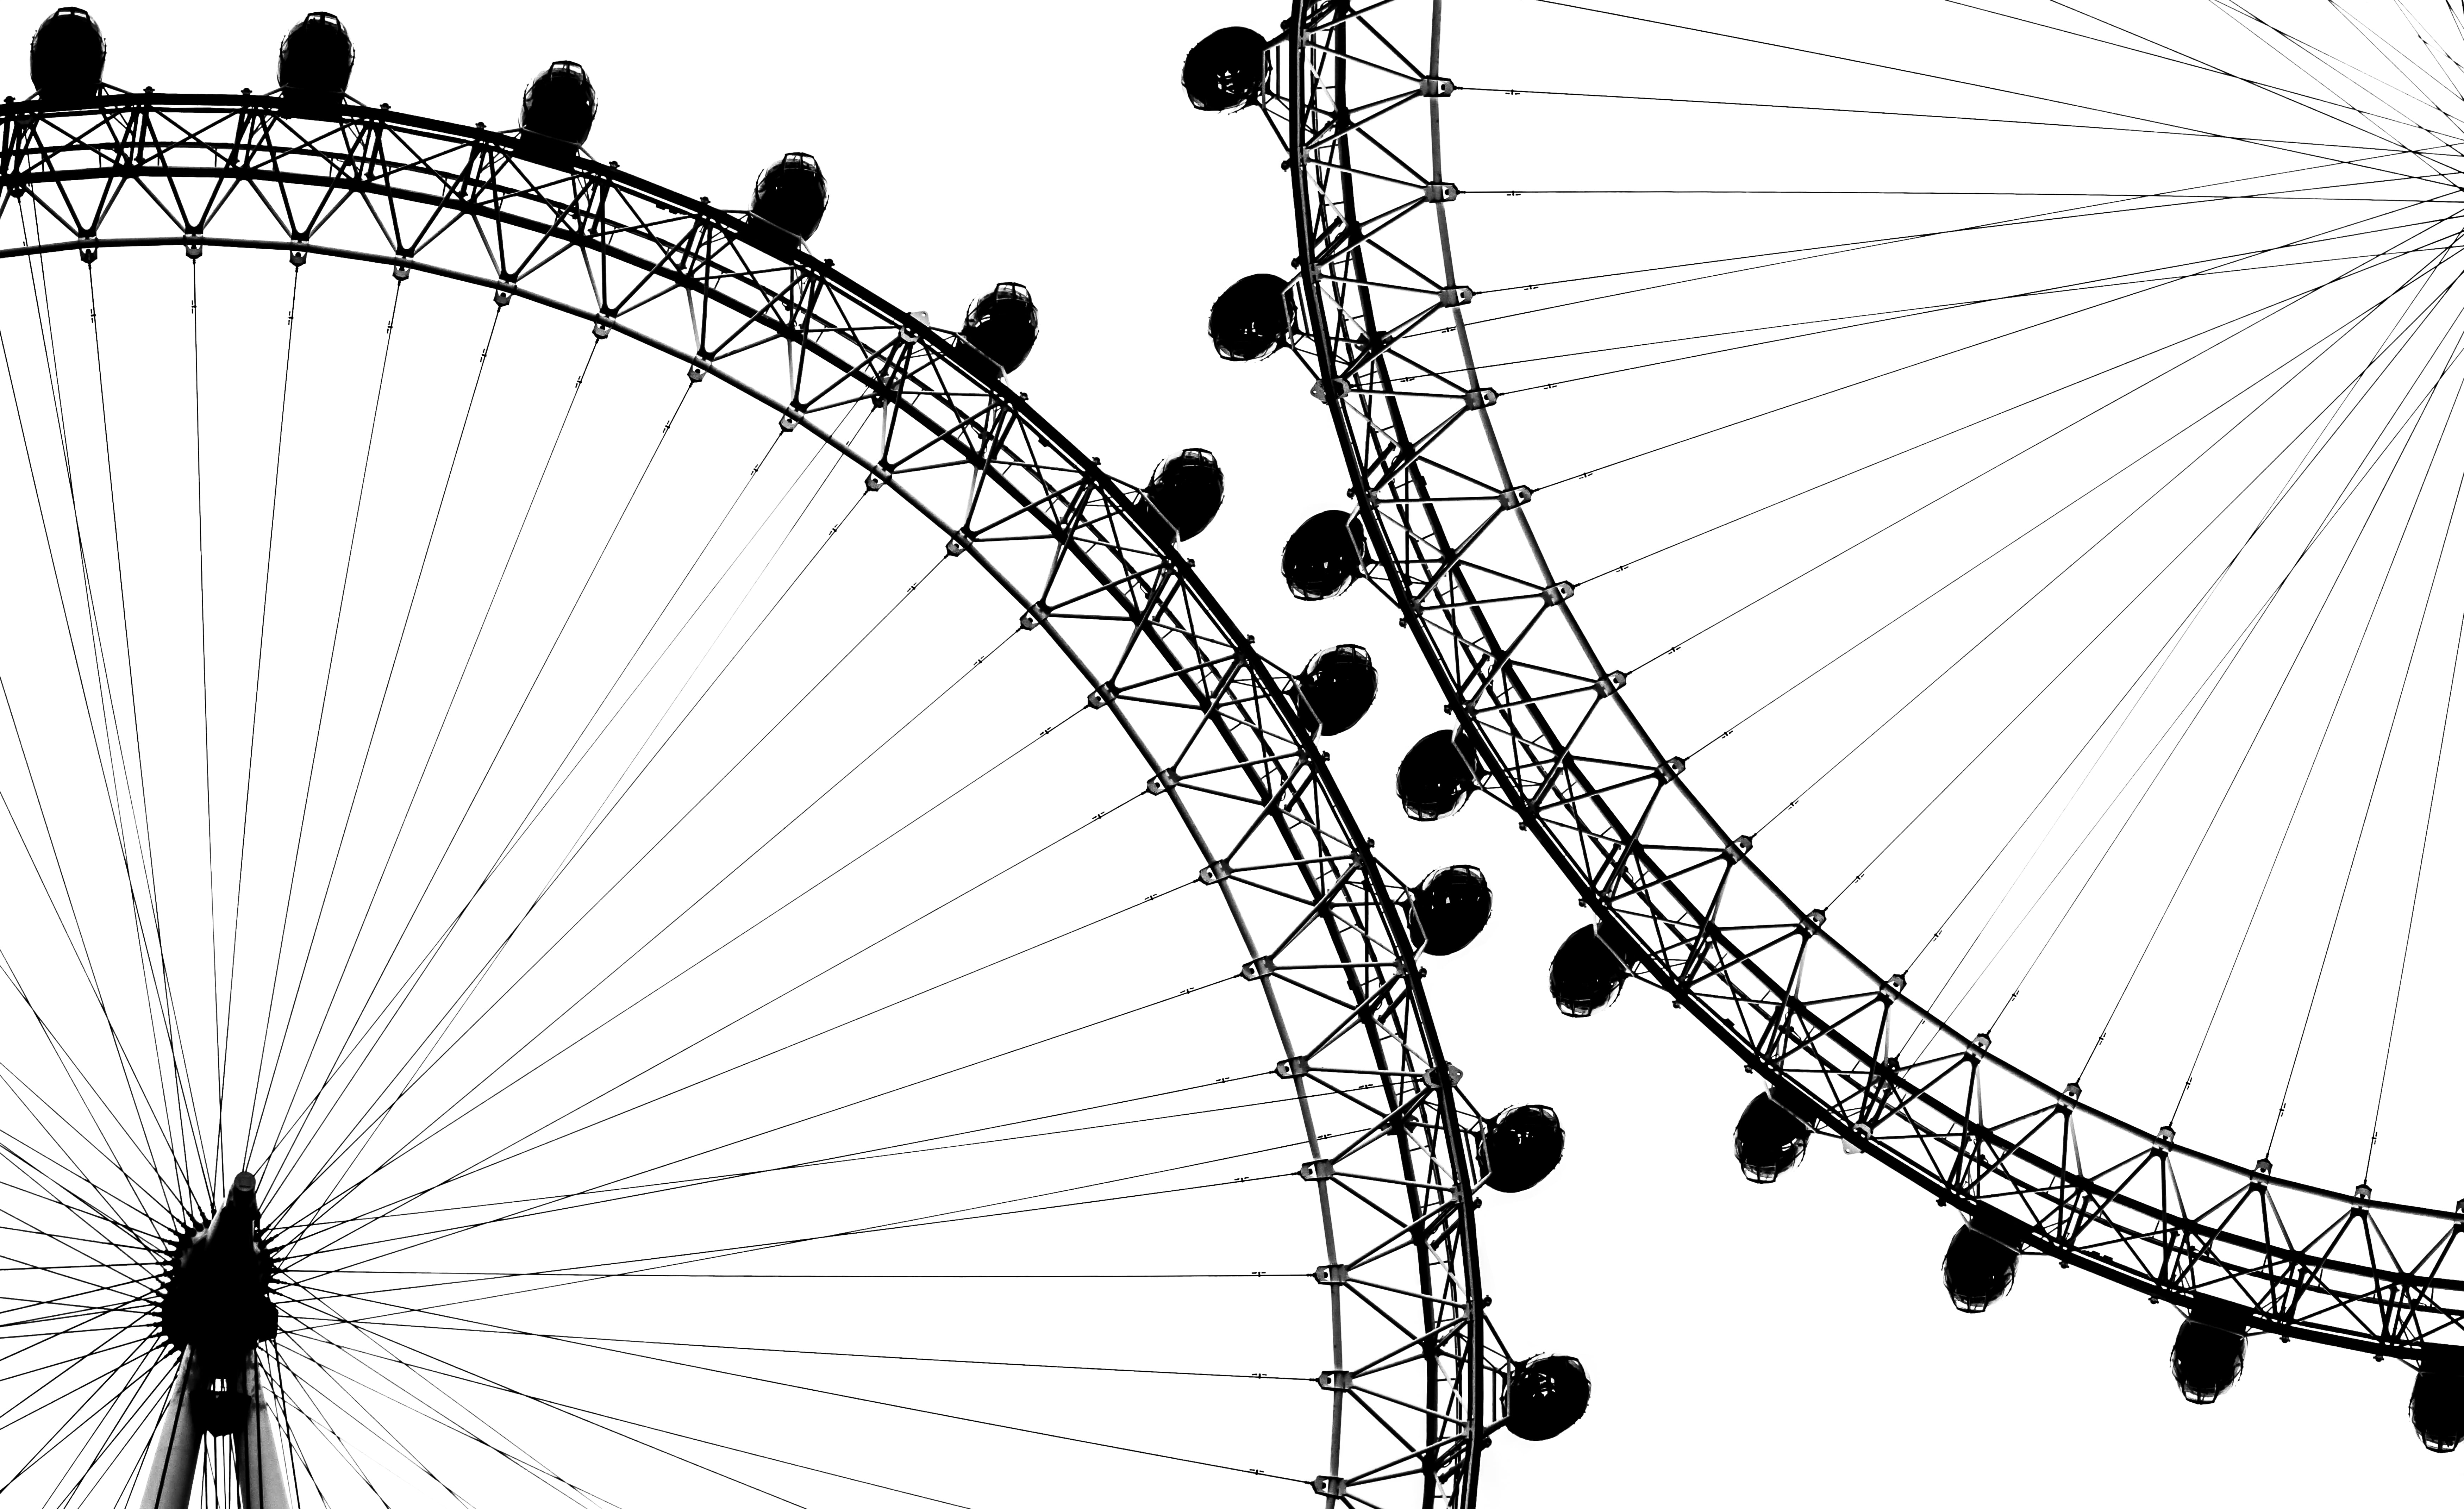 silhouette of two ferri's wheels, london, london eye, london, london eye